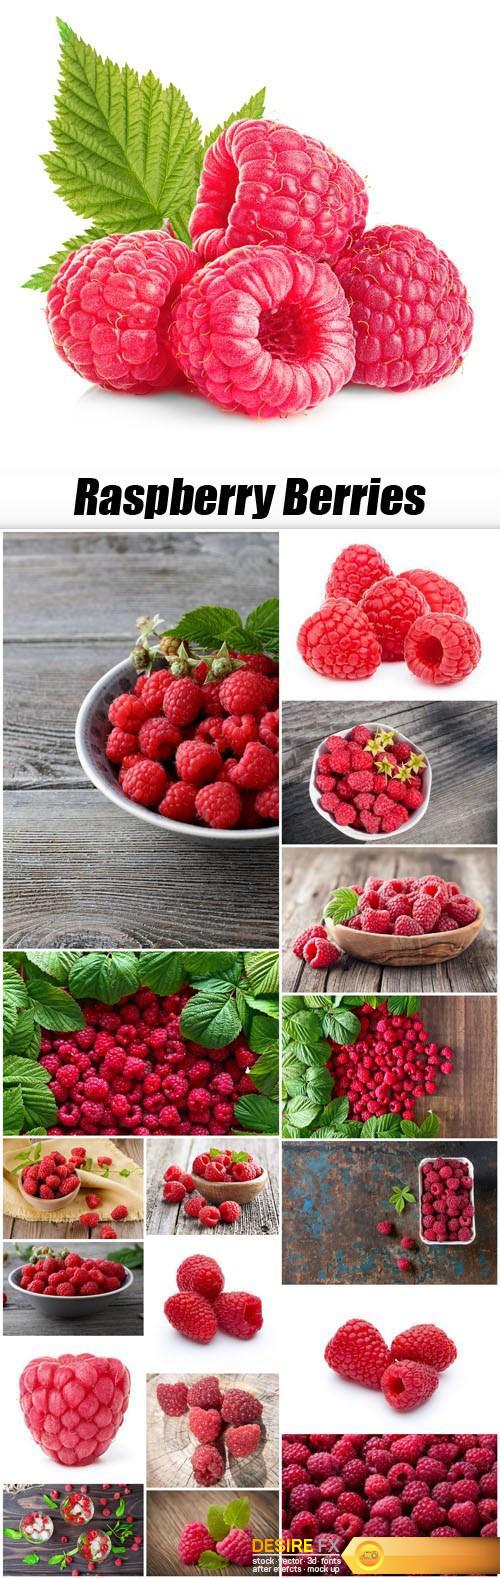 Raspberry Berries - 18xUHQ JPEG